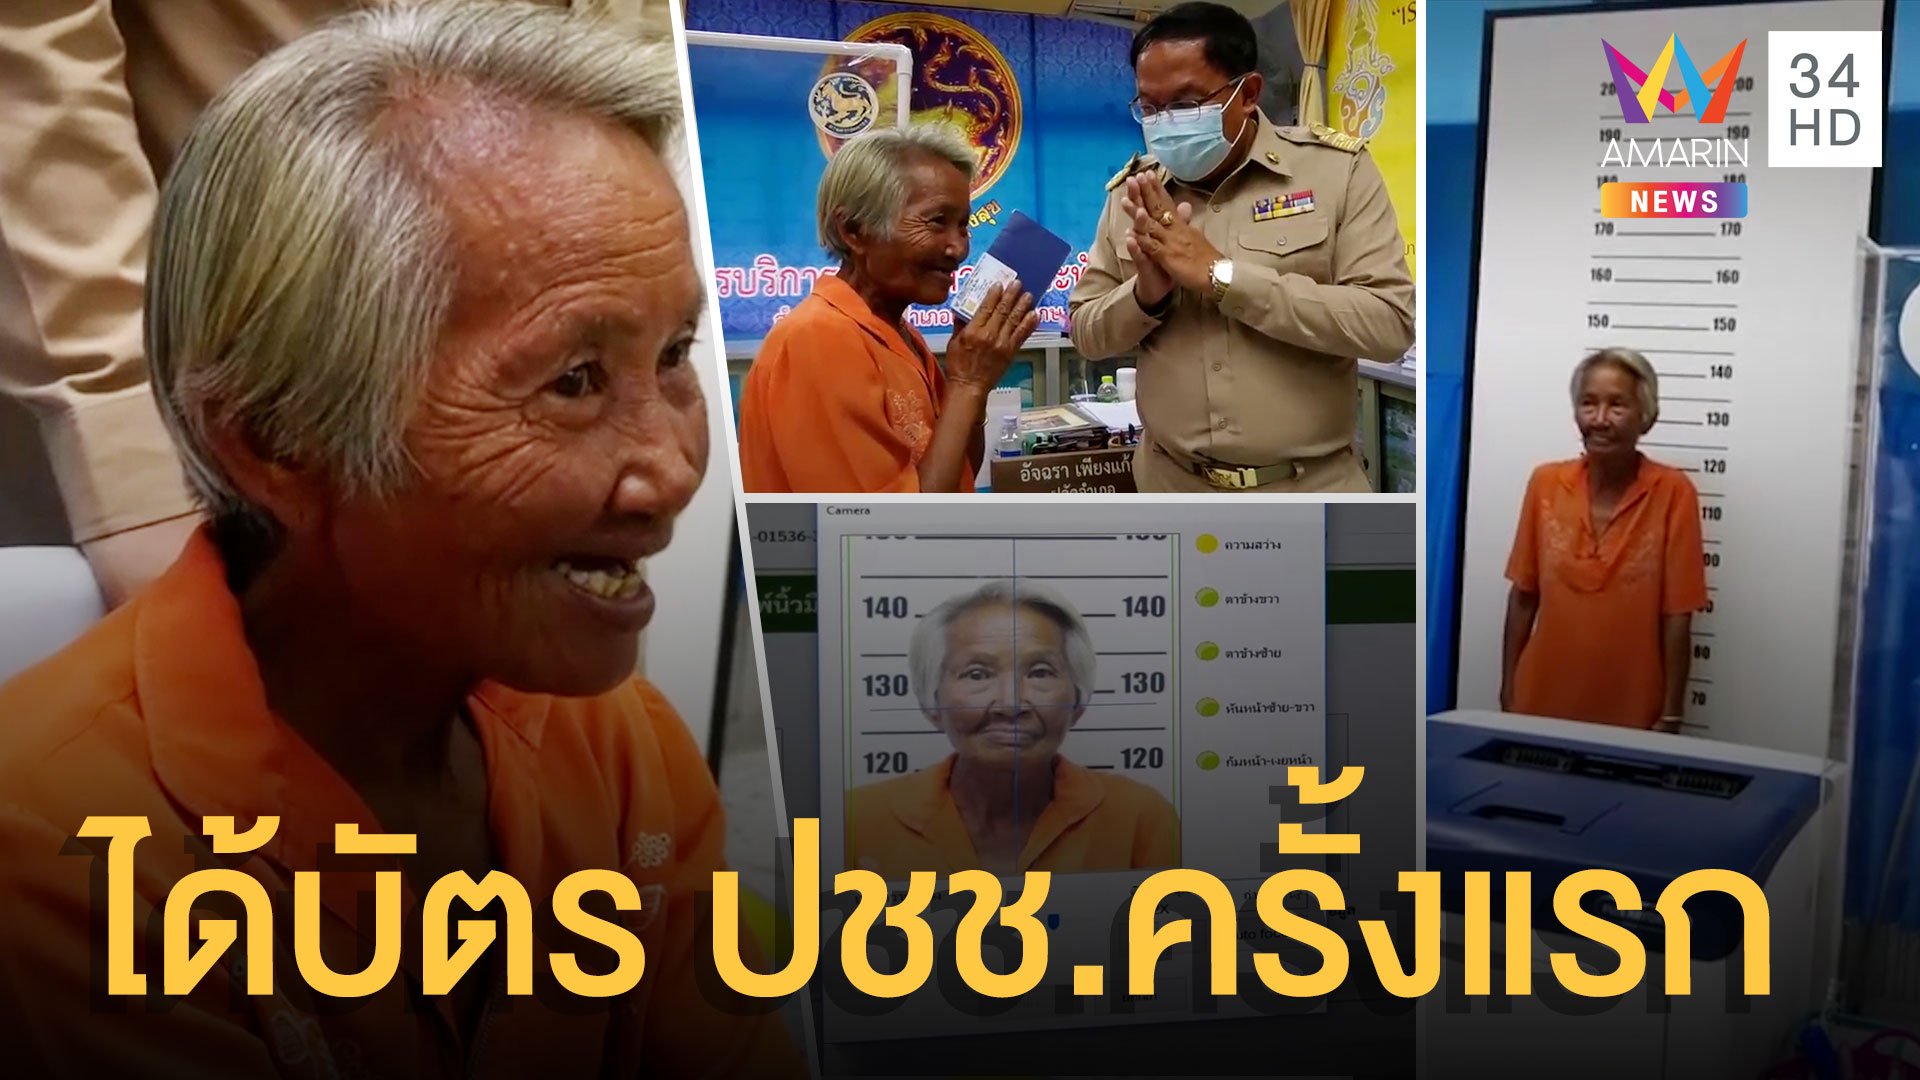 ป้าเก็บขยะวัย 65 ดีใจได้บัตรประชาชน เป็นคนไทยครั้งแรก | ข่าวอรุณอมรินทร์ | 8 ธ.ค. 63 | AMARIN TVHD34